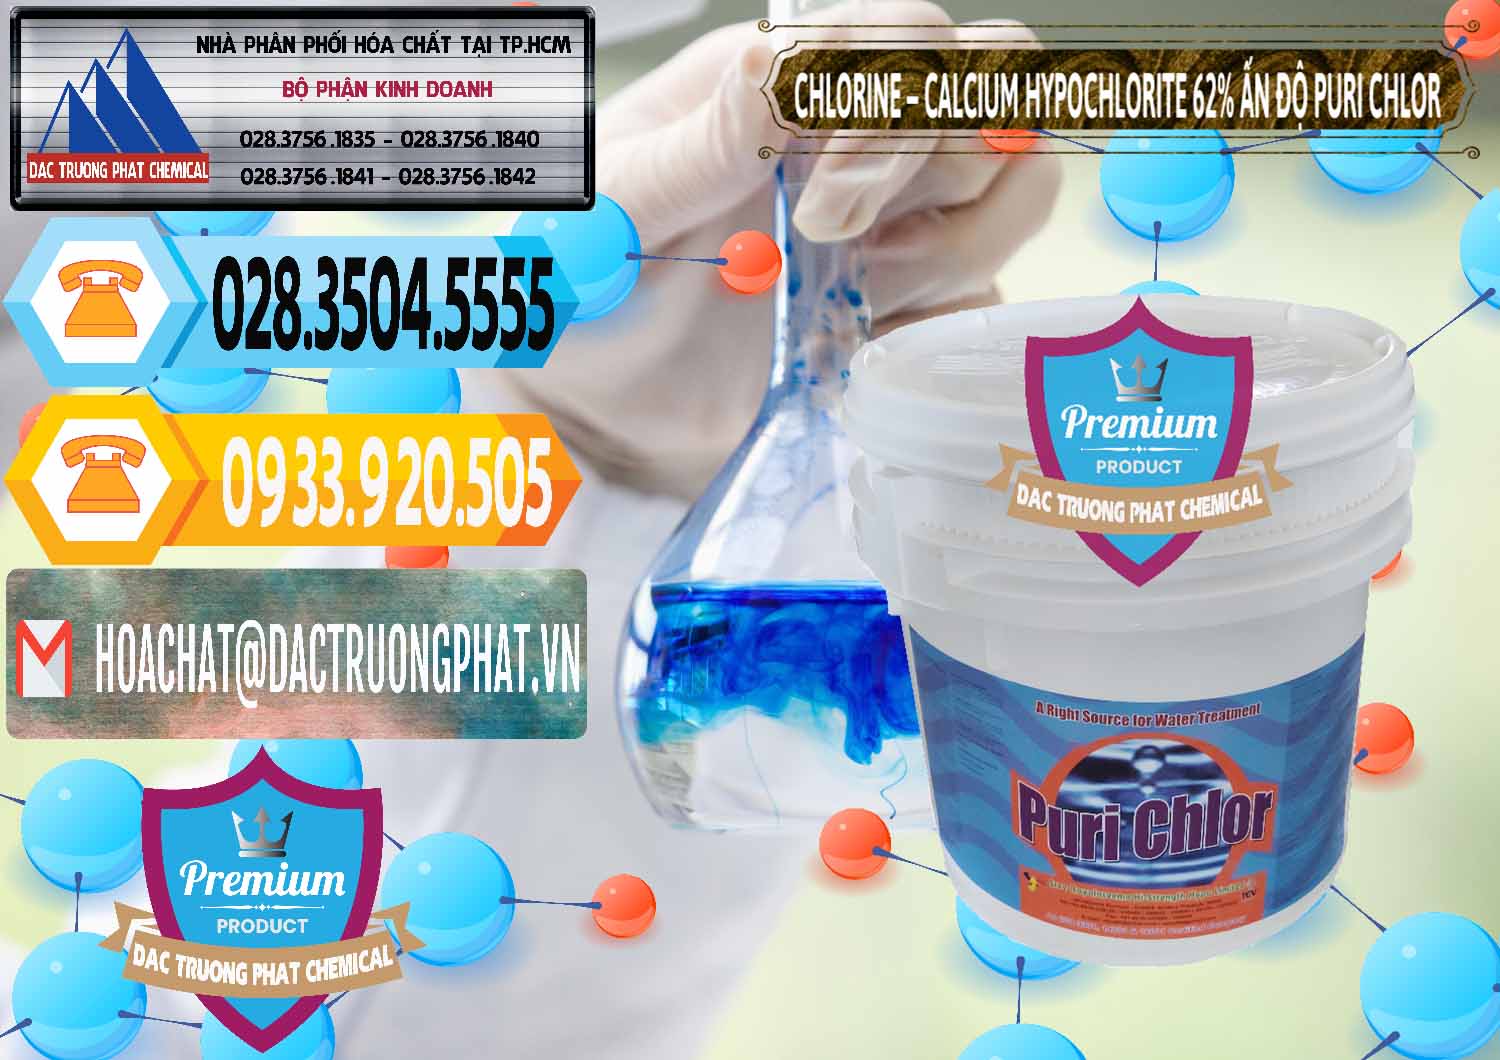 Công ty cung ứng & bán Chlorine – Clorin 62% Puri Chlo Ấn Độ India - 0052 - Công ty chuyên cung cấp ( kinh doanh ) hóa chất tại TP.HCM - hoachattayrua.net